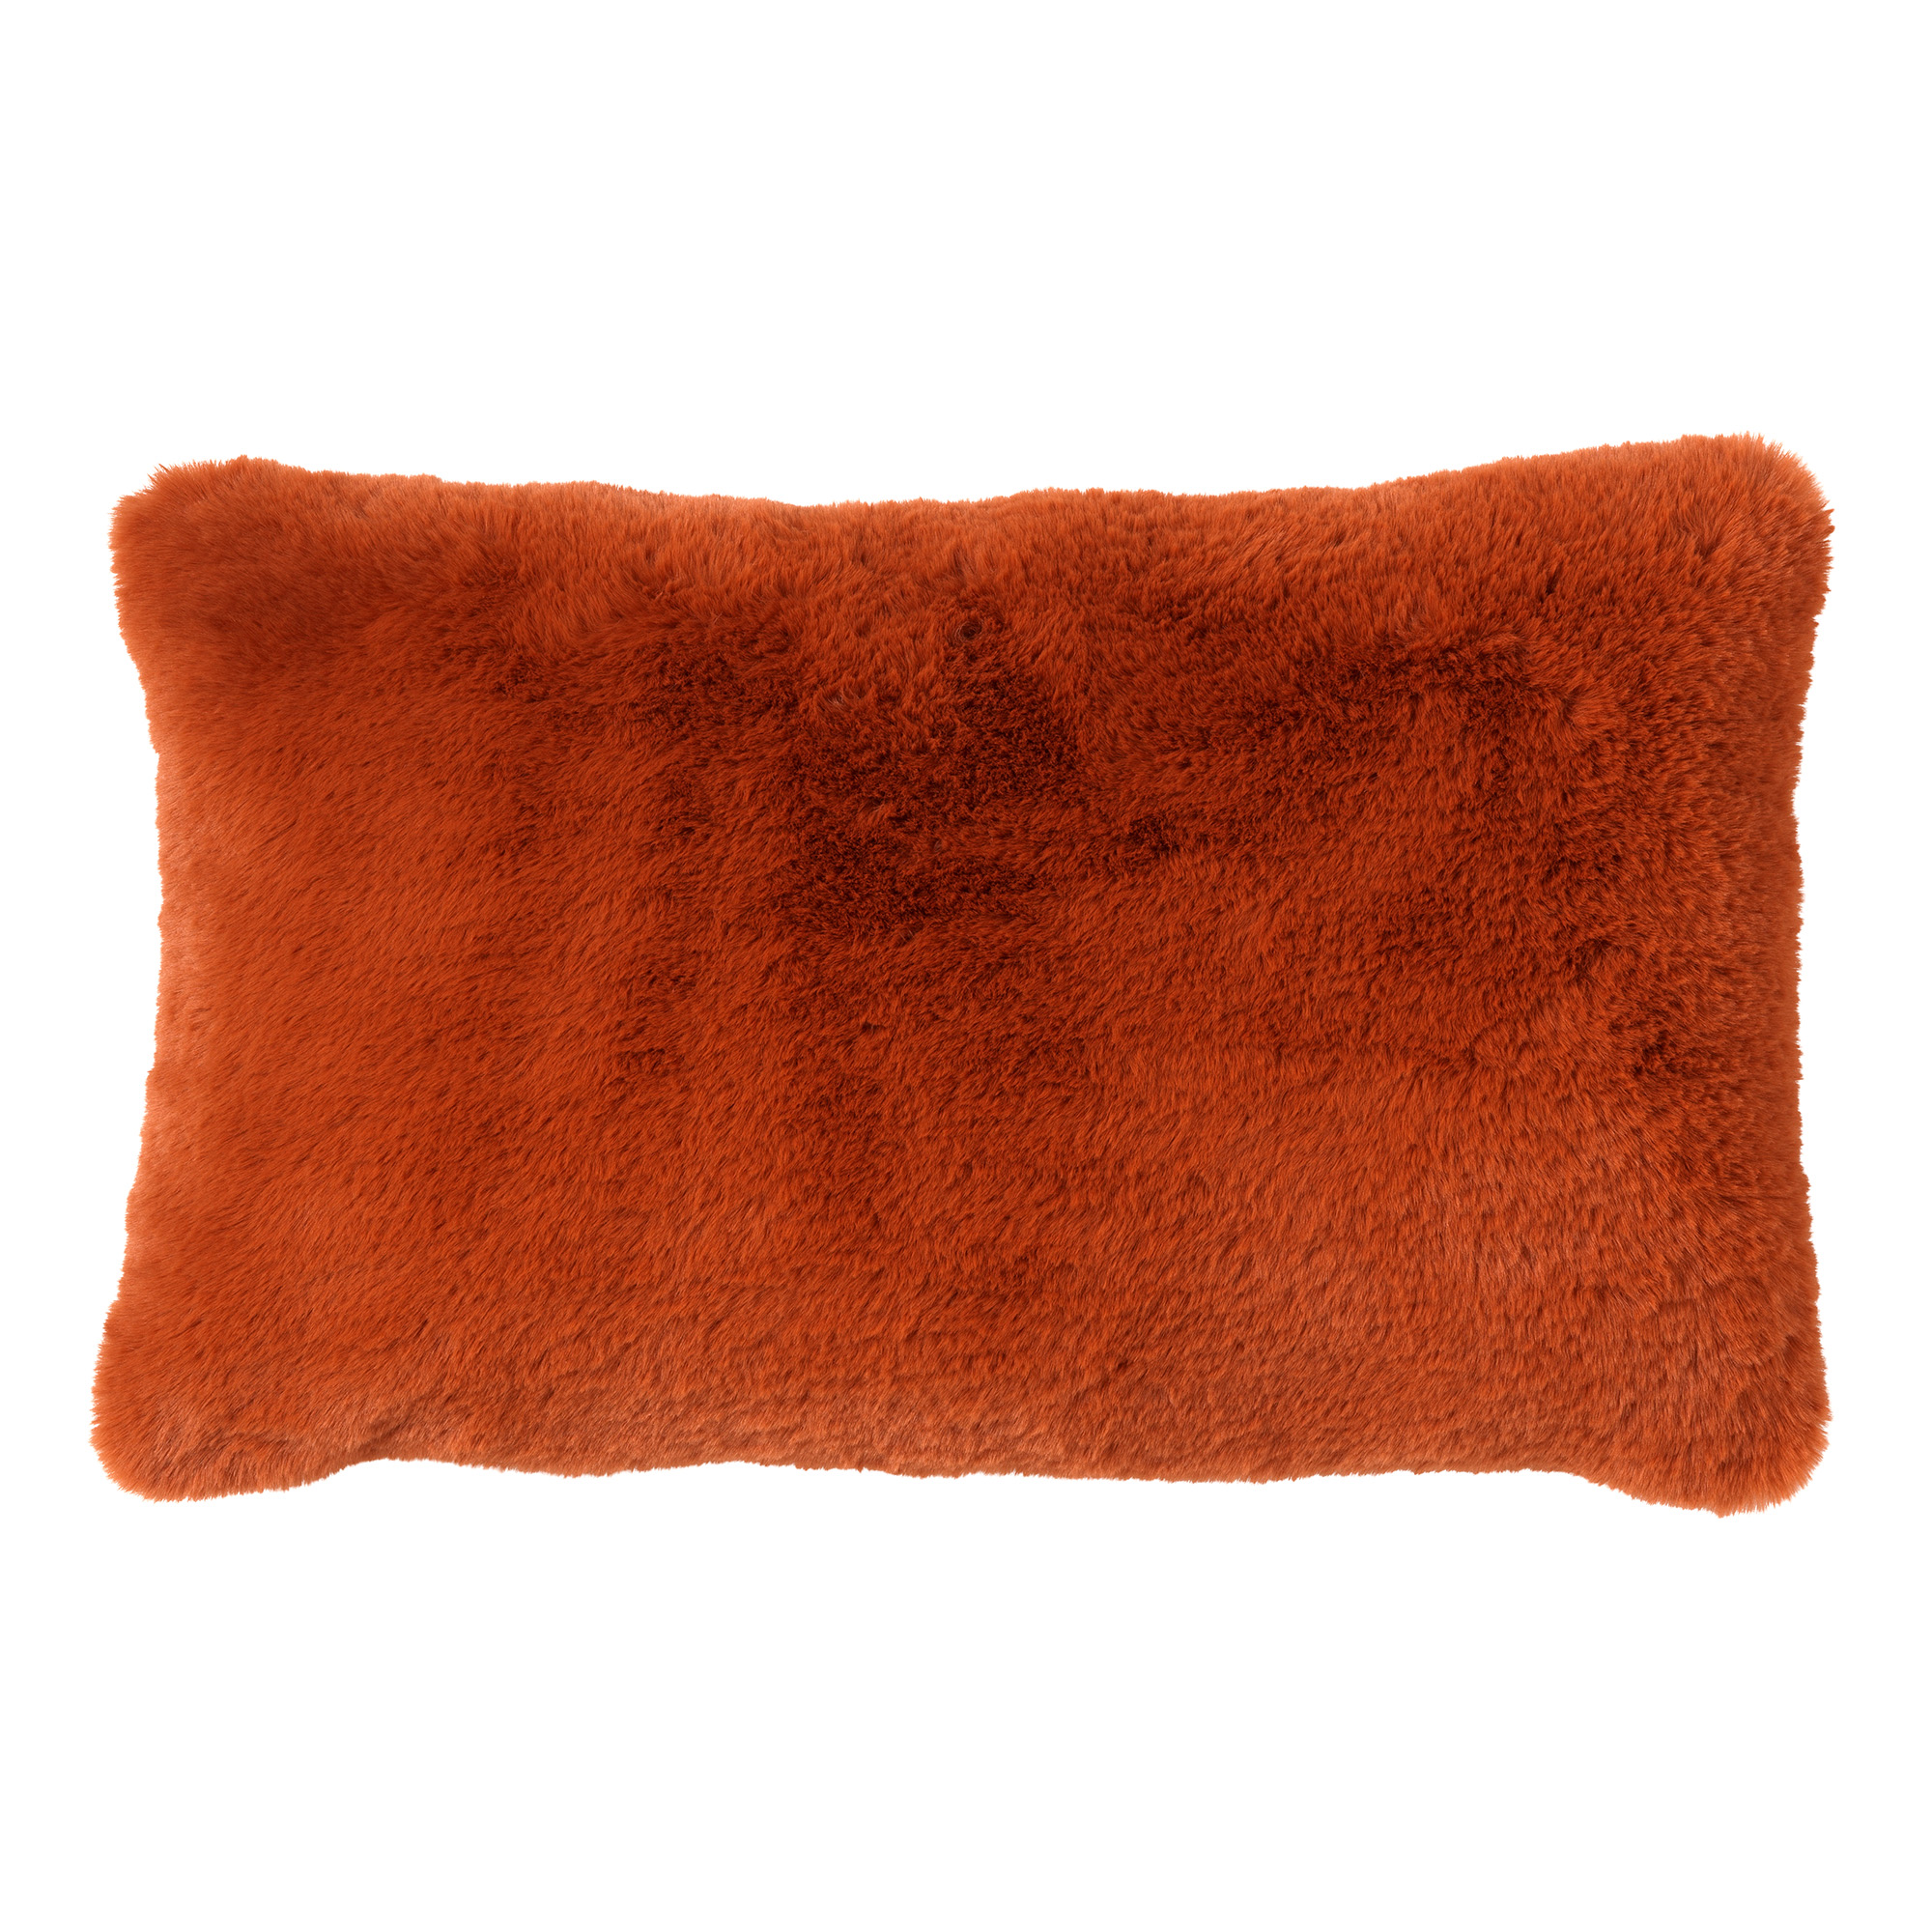 ZAYA - Kussenhoes 30x50 cm - bontlook - effen kleur - Potters Clay - oranje